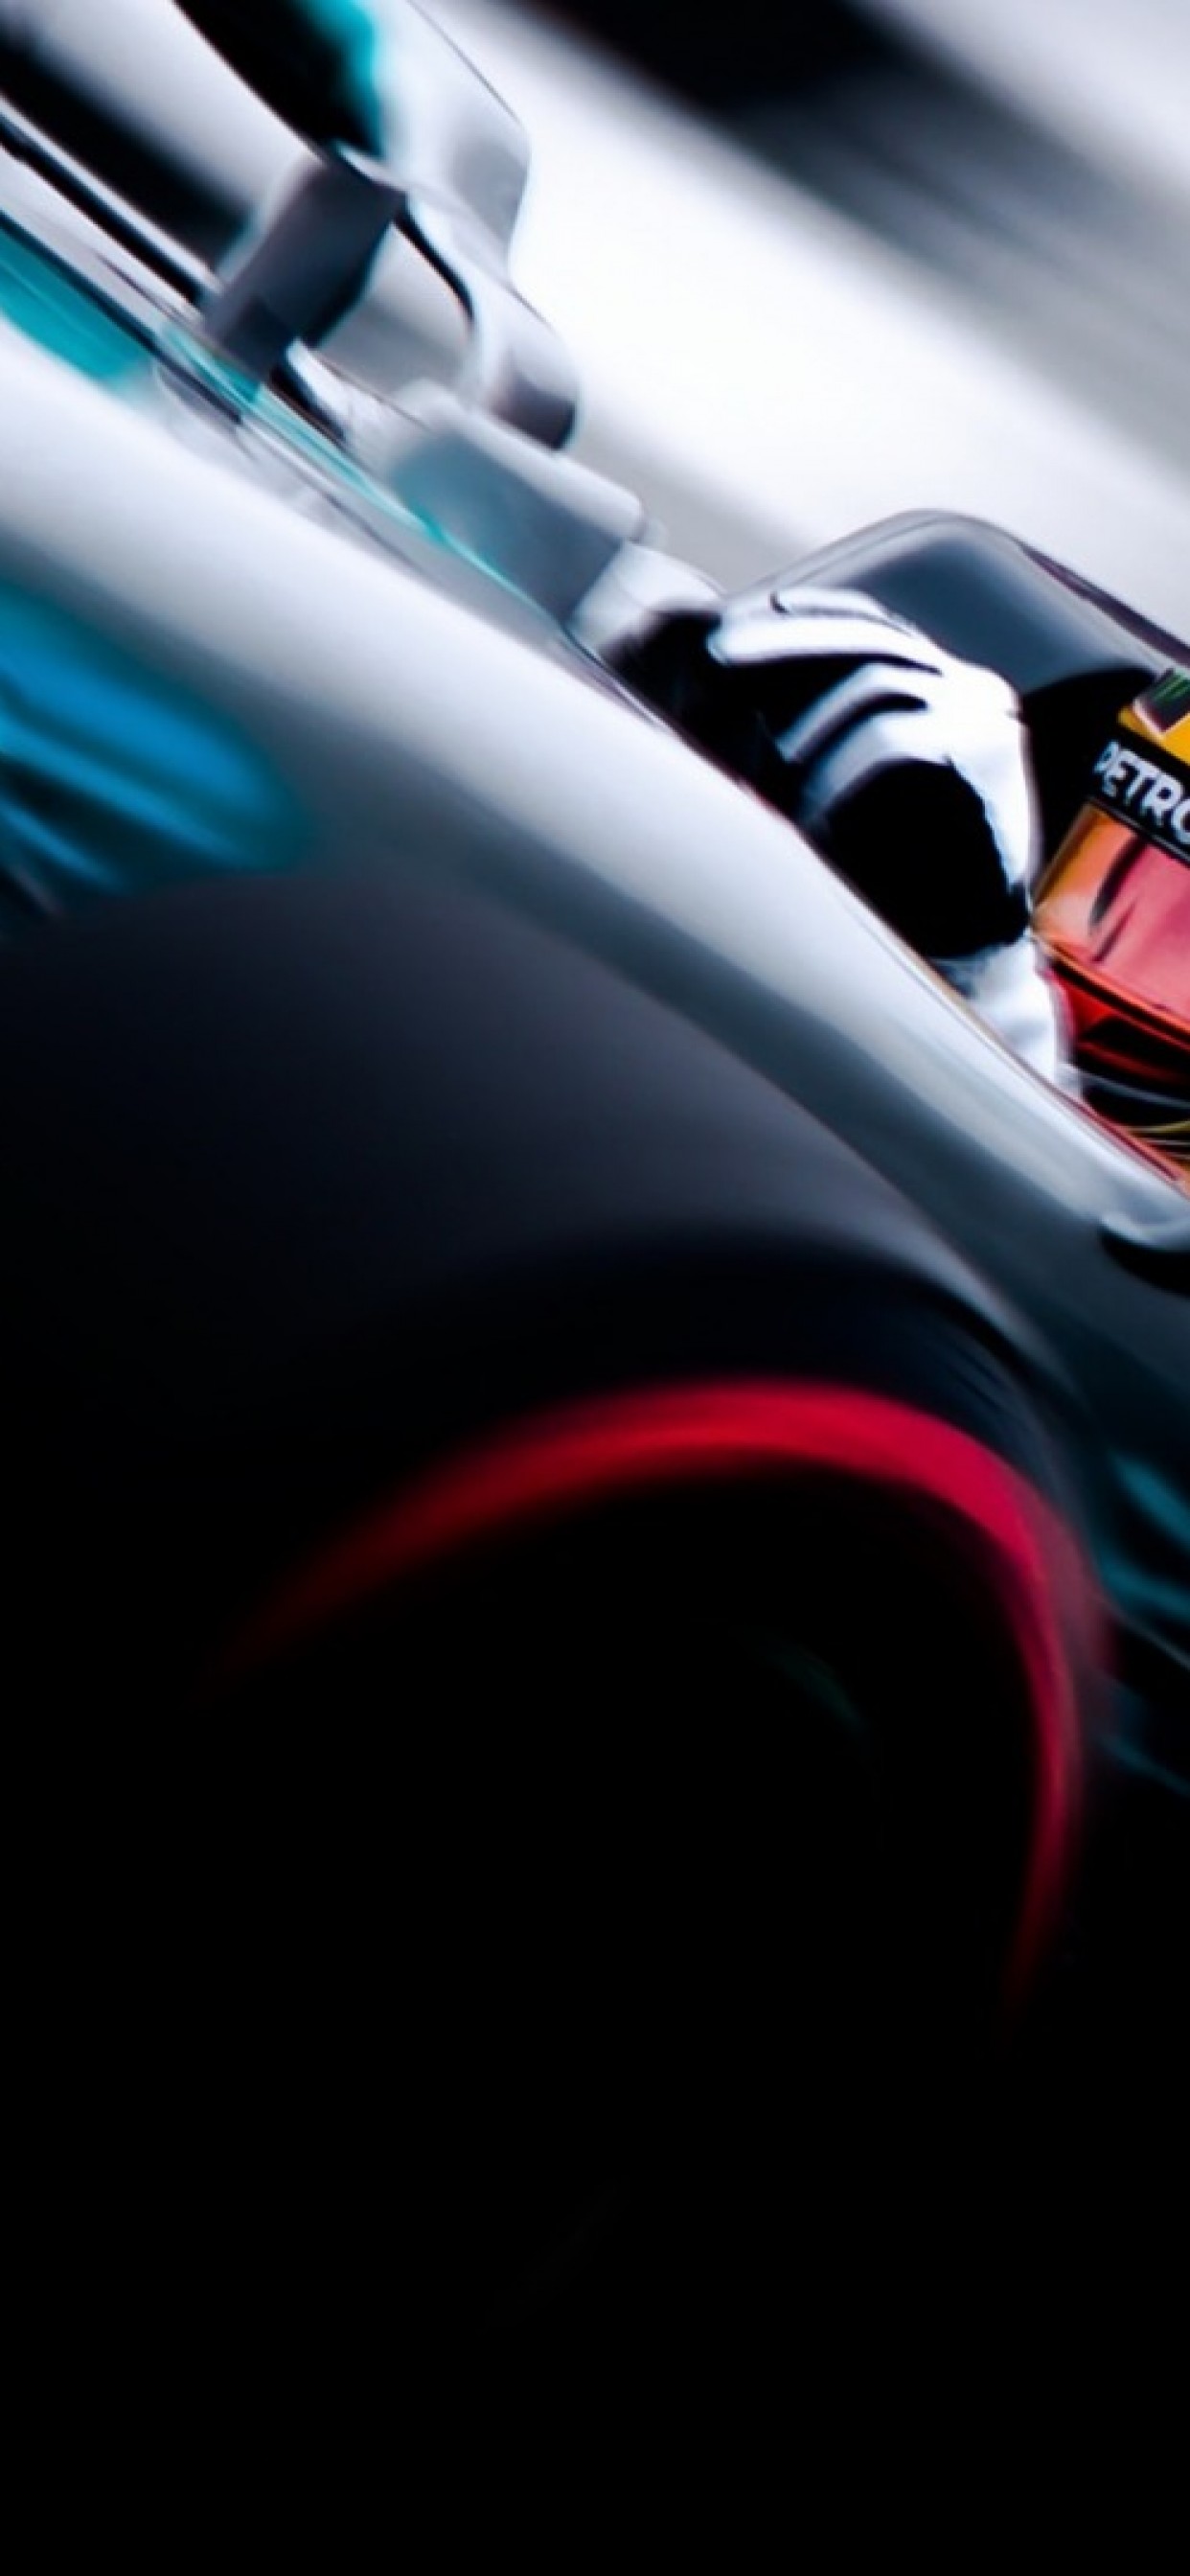 Iphone Xs Max Lewis Hamilton Wallpaper - Mercedes F1 Iphone Xs - HD Wallpaper 